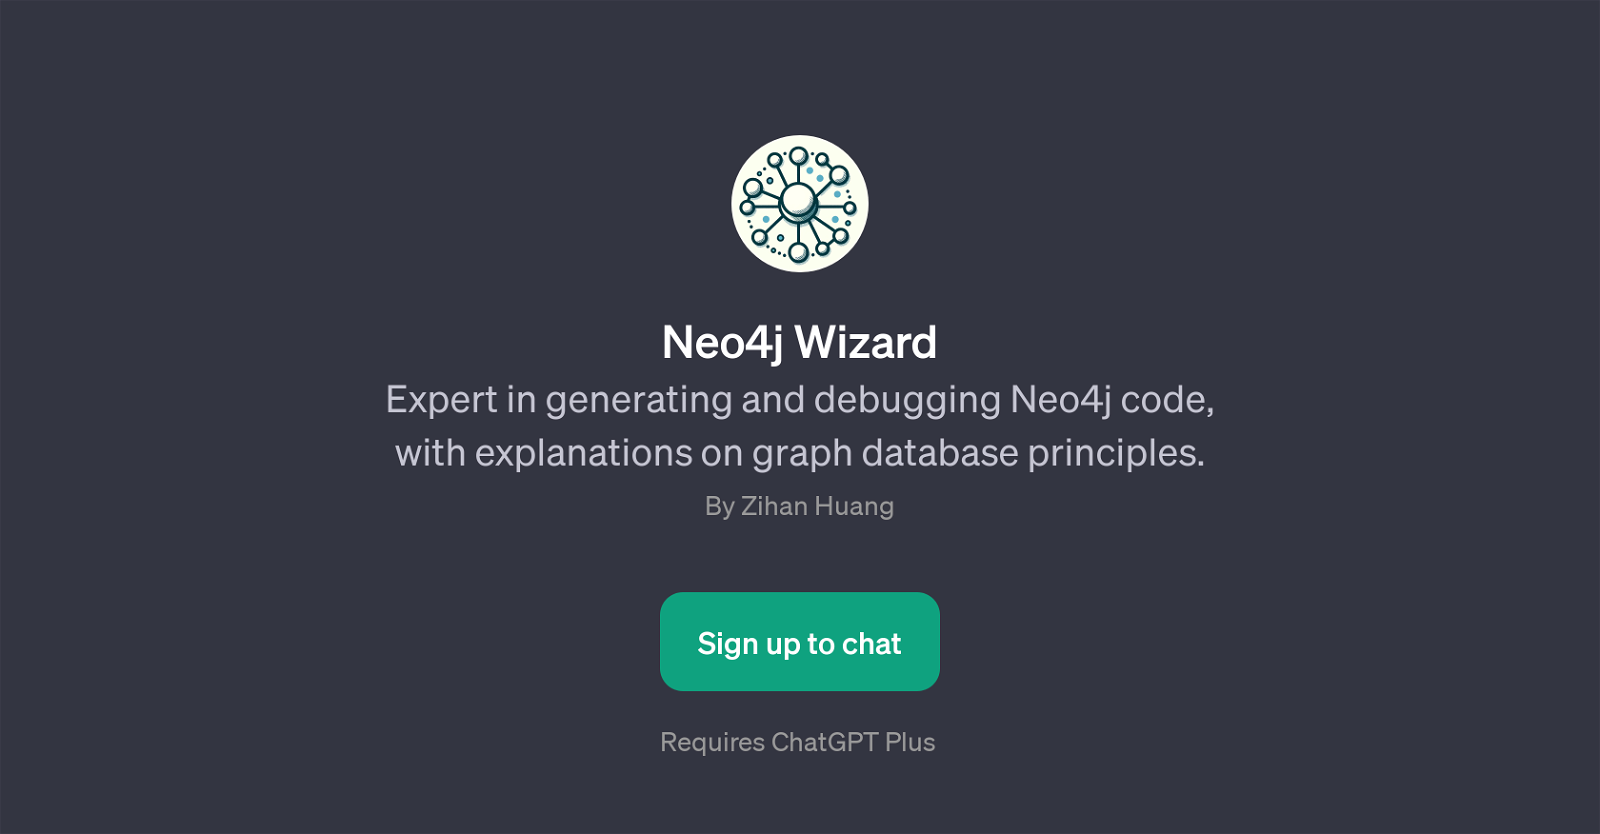 Neo4j Wizard website